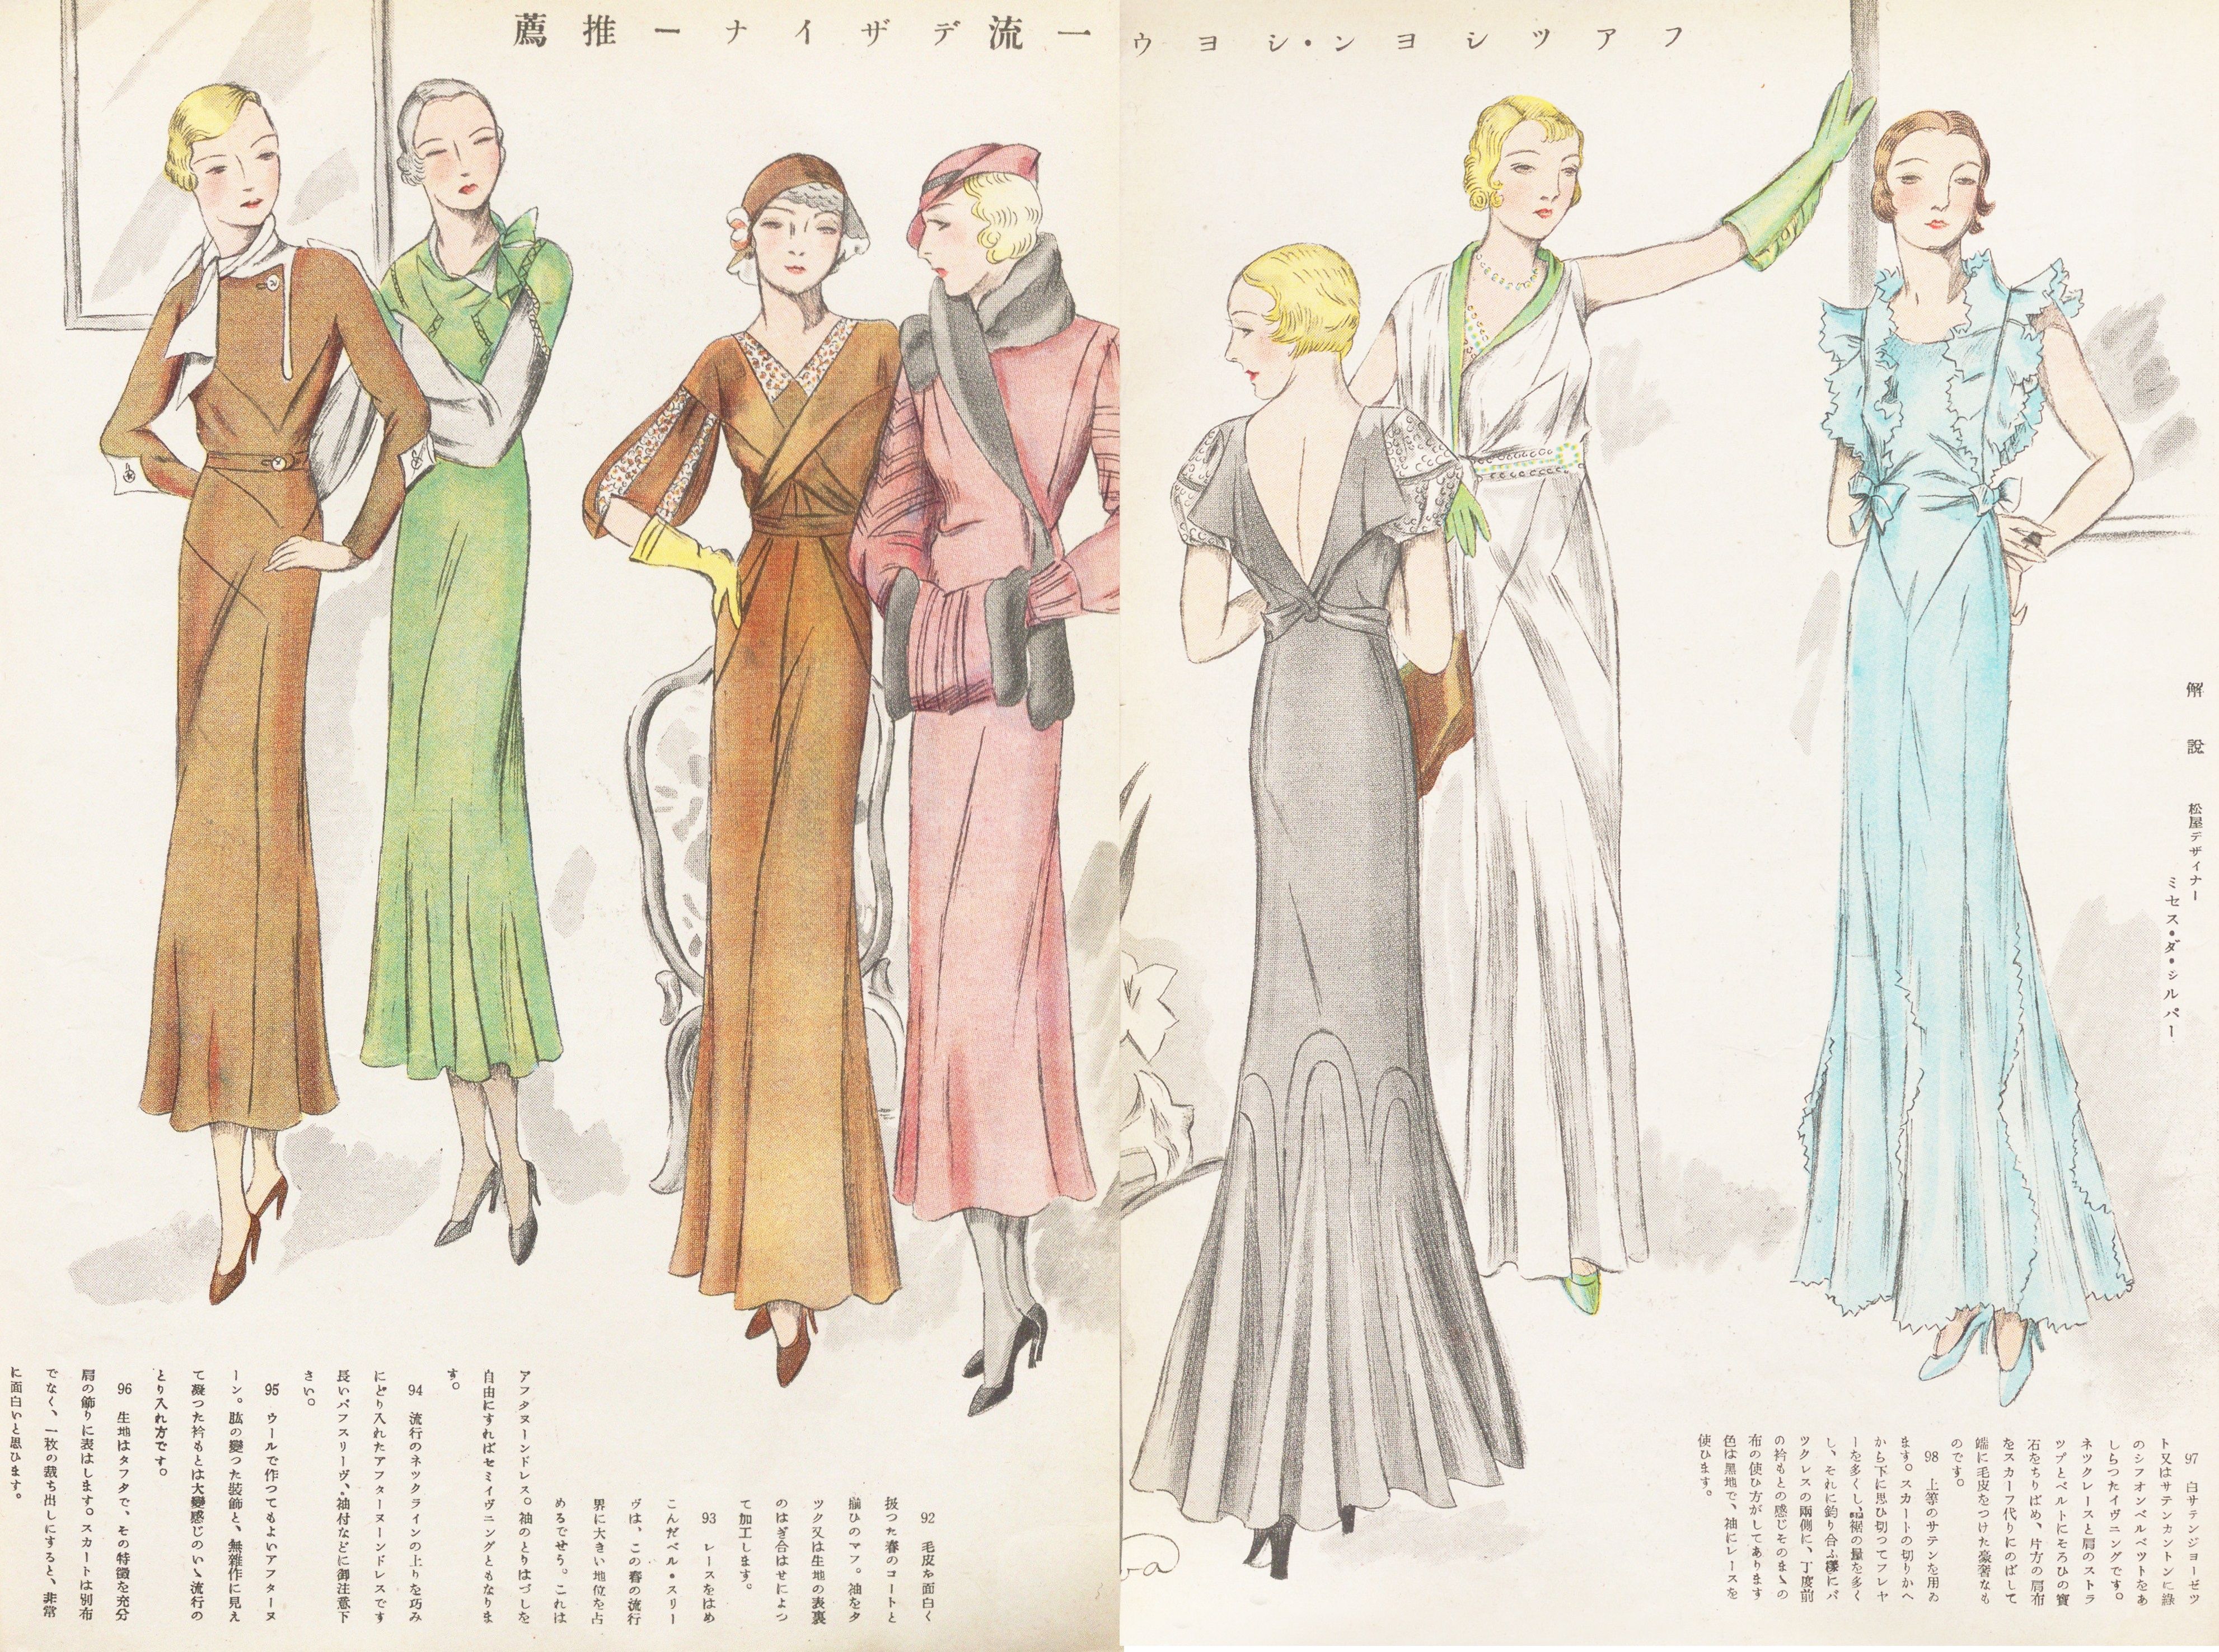 夜会服 その響きに多くの女性が胸ときめかせた昭和初期 100年雑誌 婦人画報 のアーカイブから